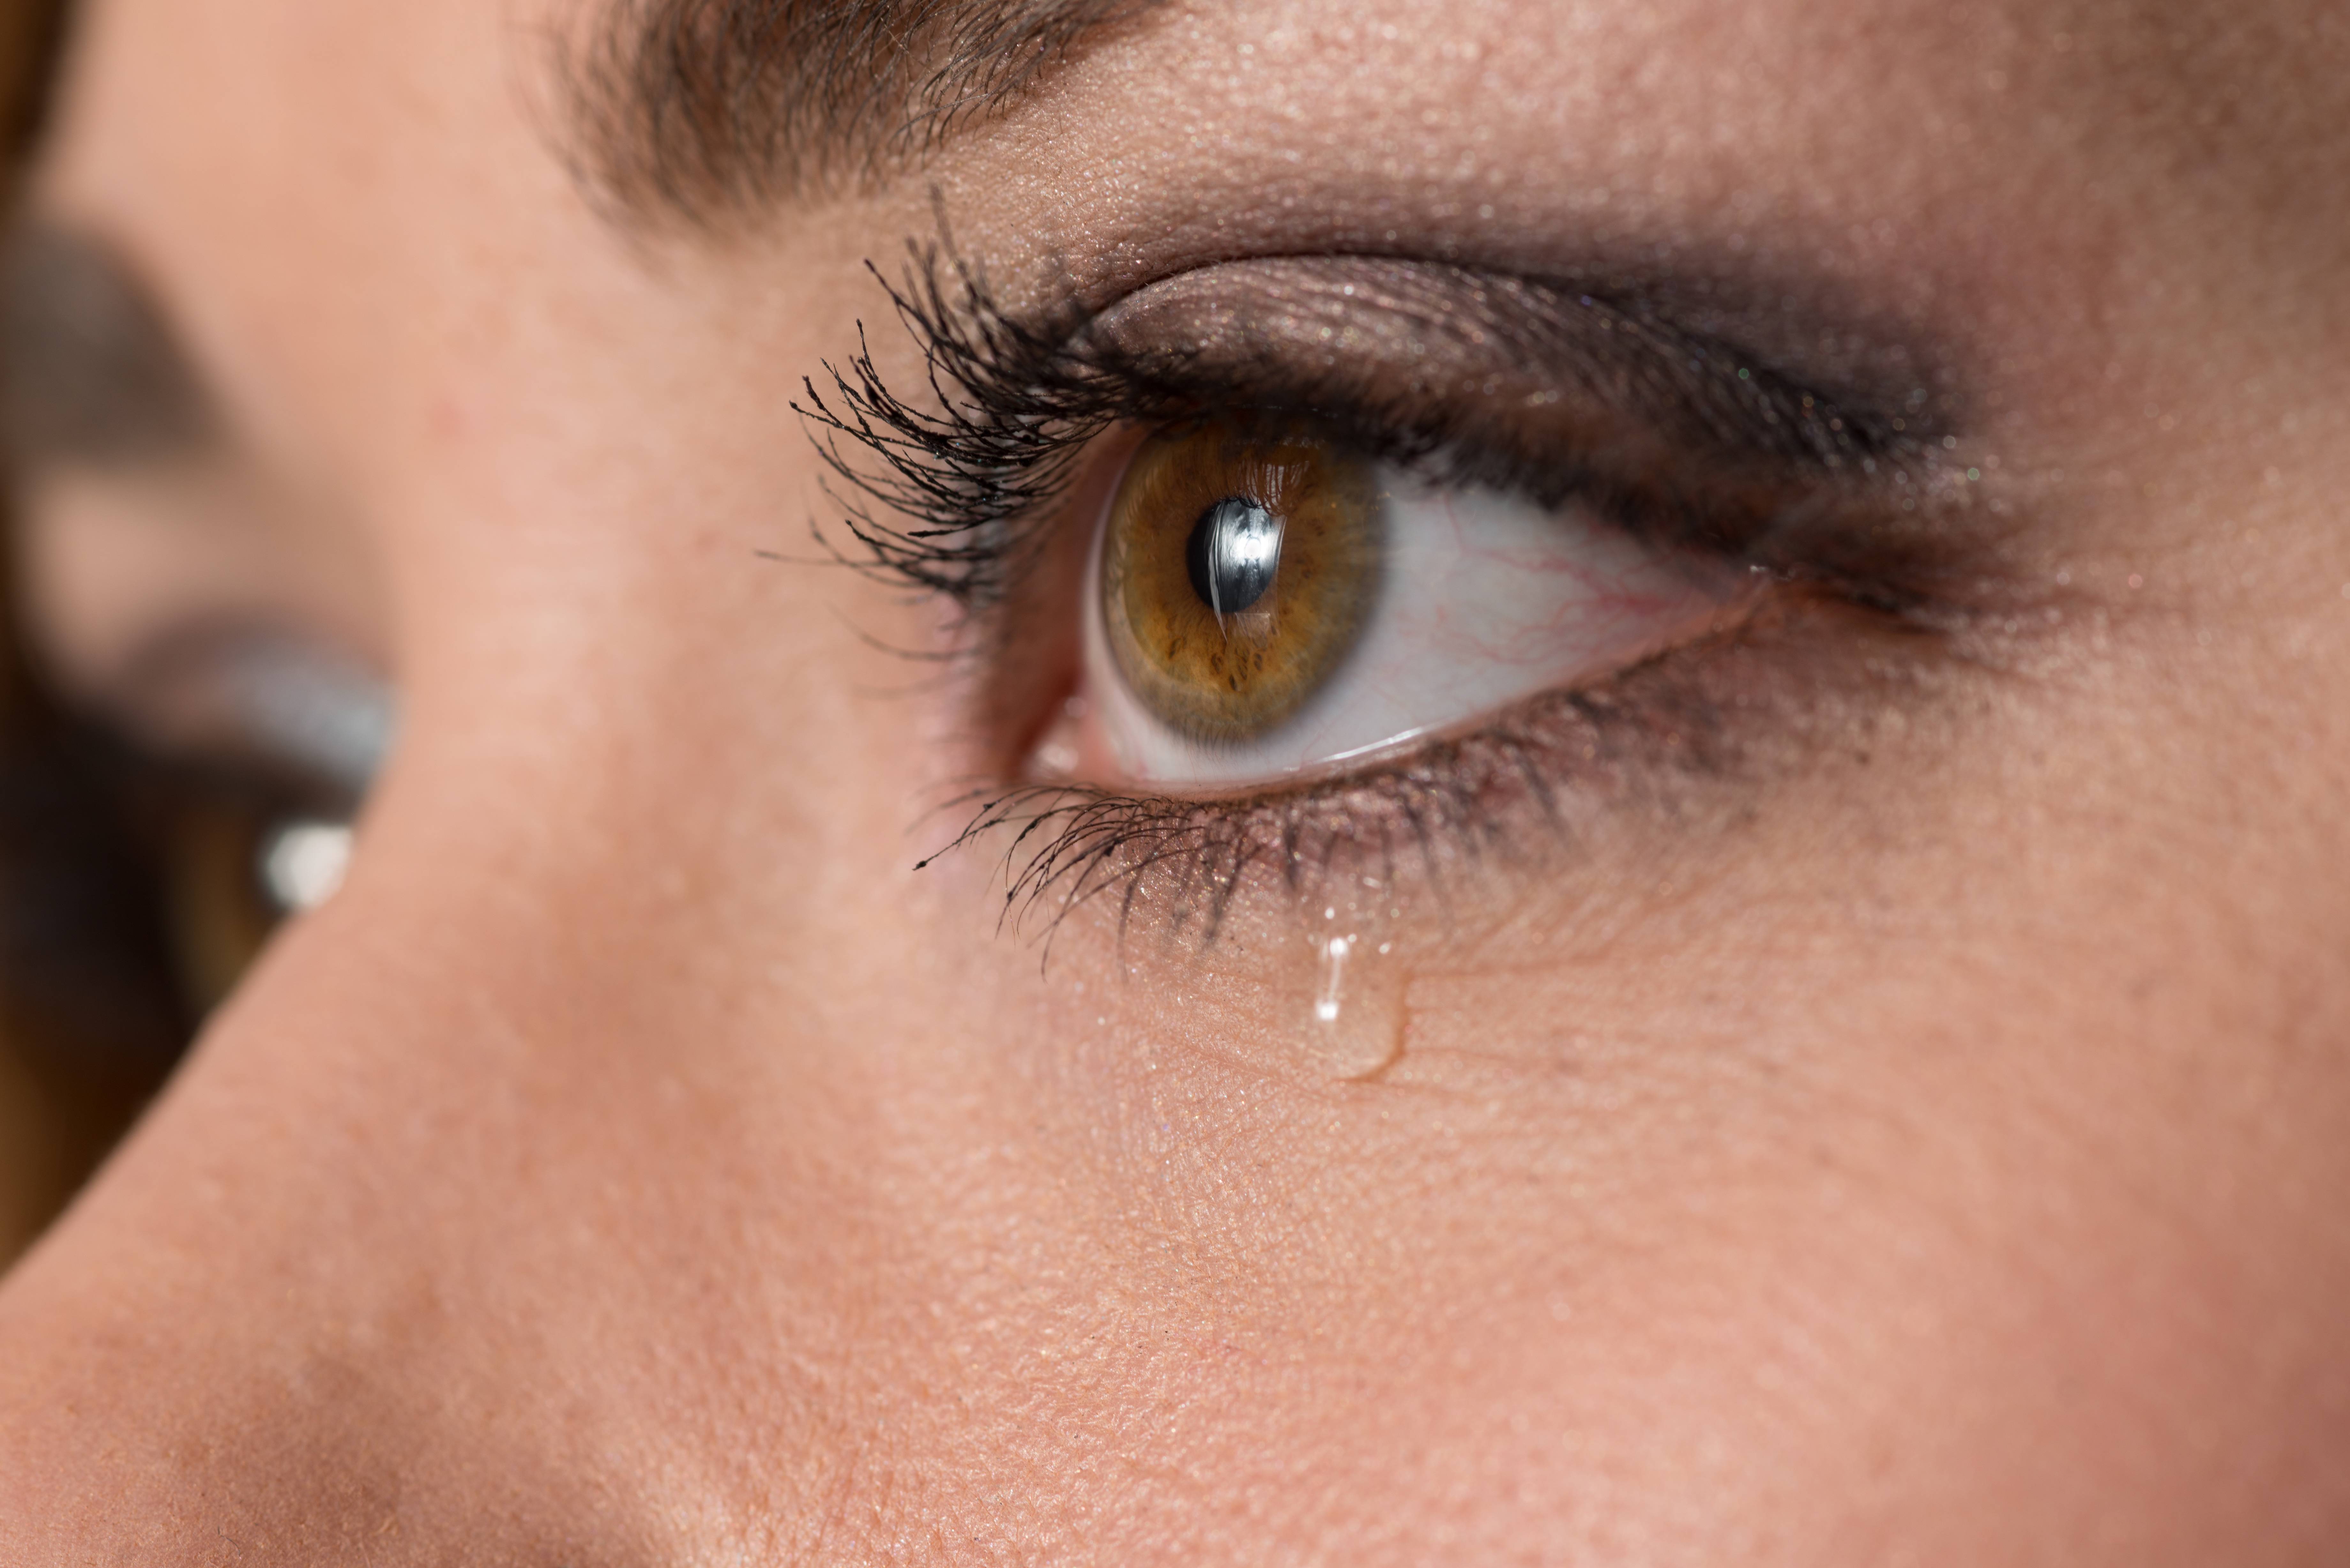 Слезоточивость глаз – причины и лечение